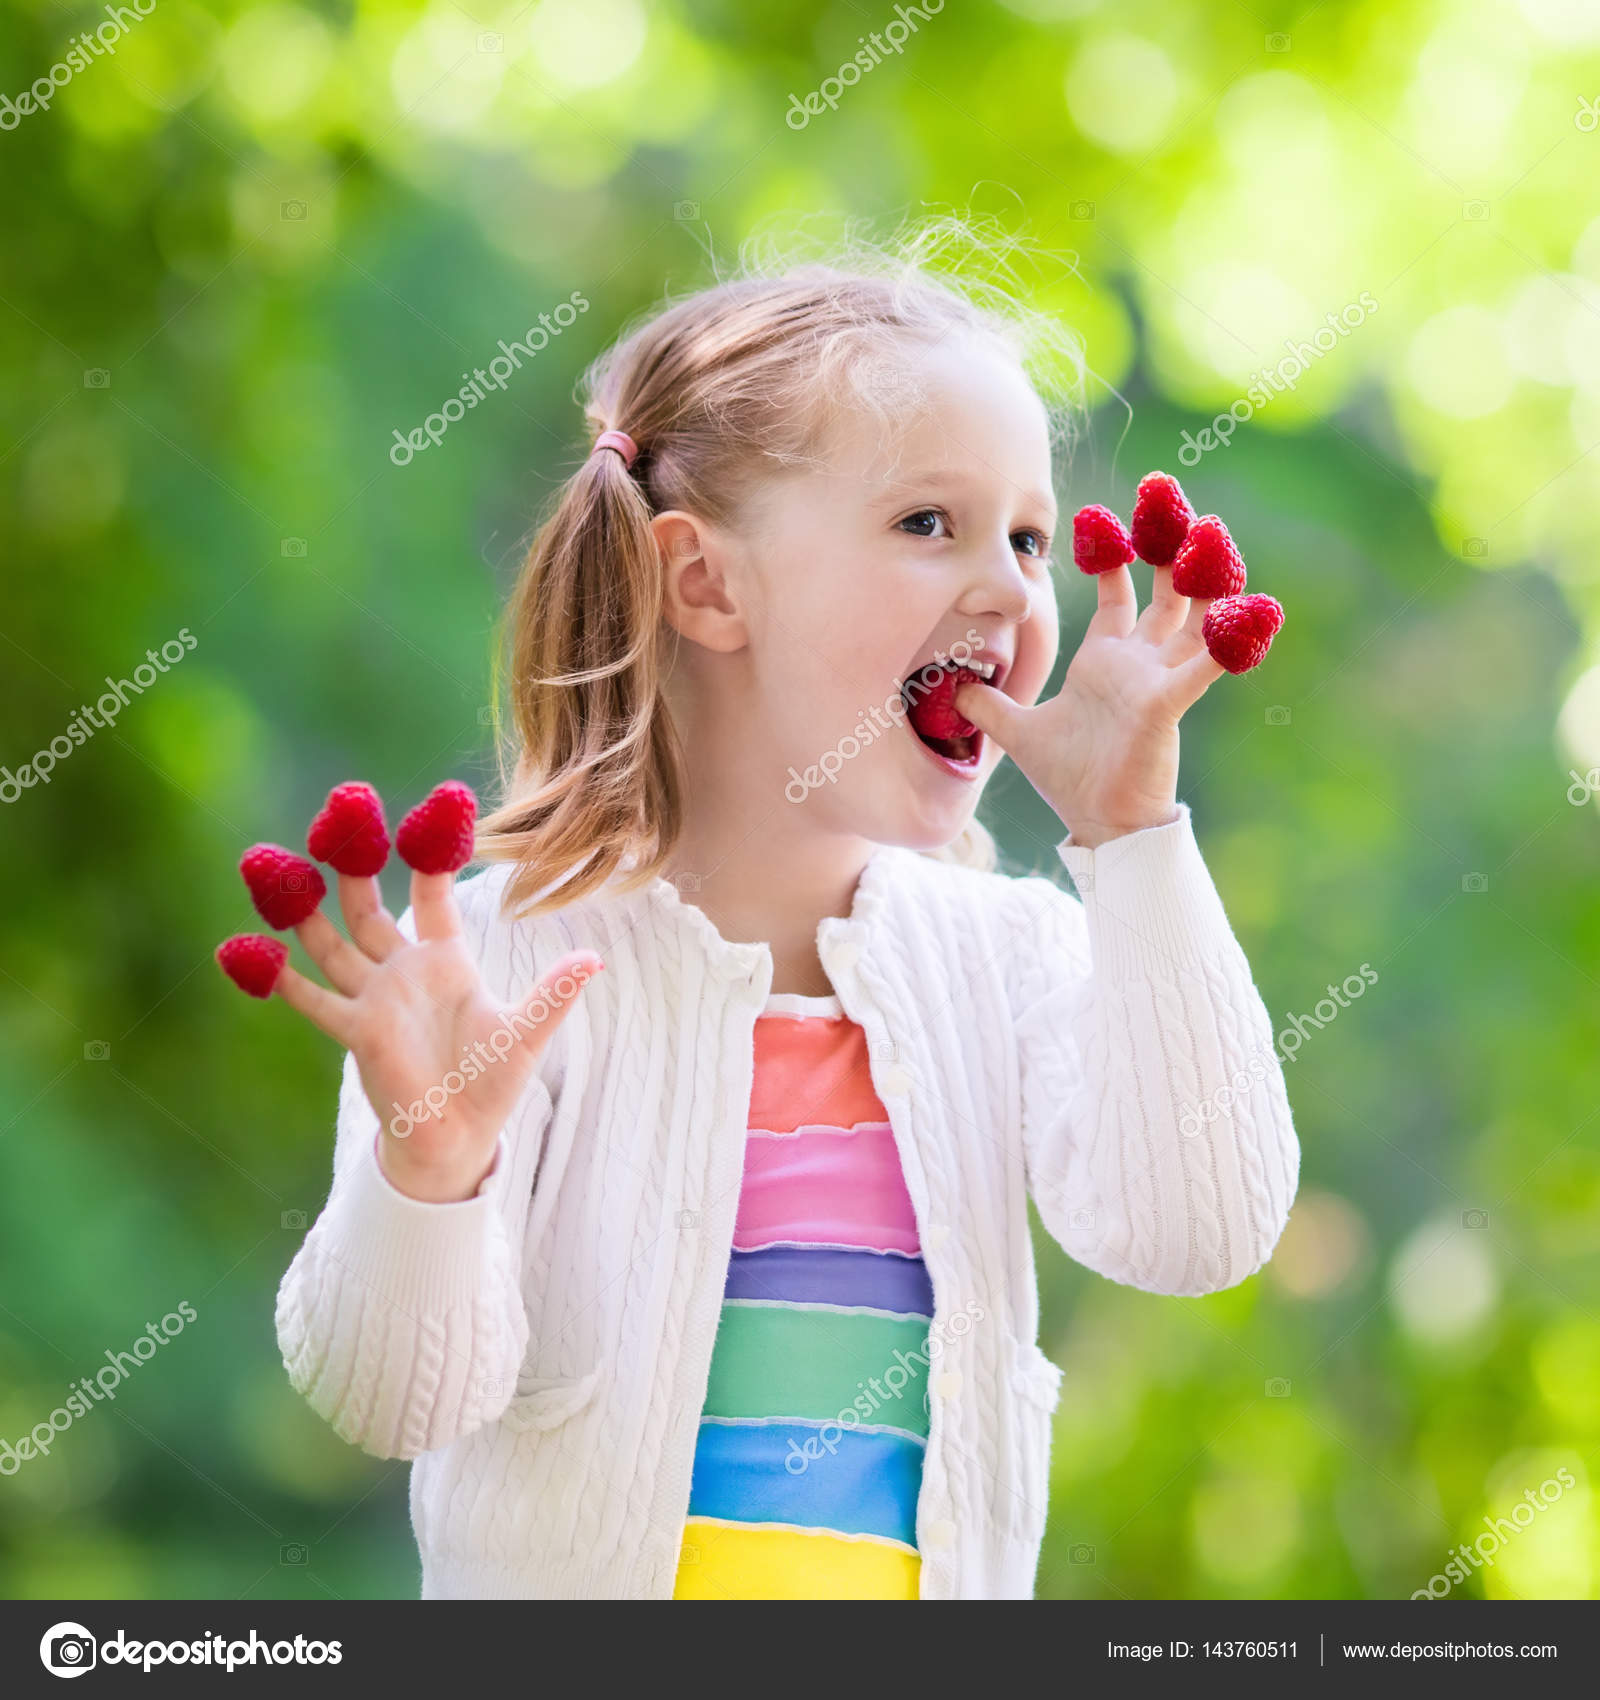 Child eating raspberries photo